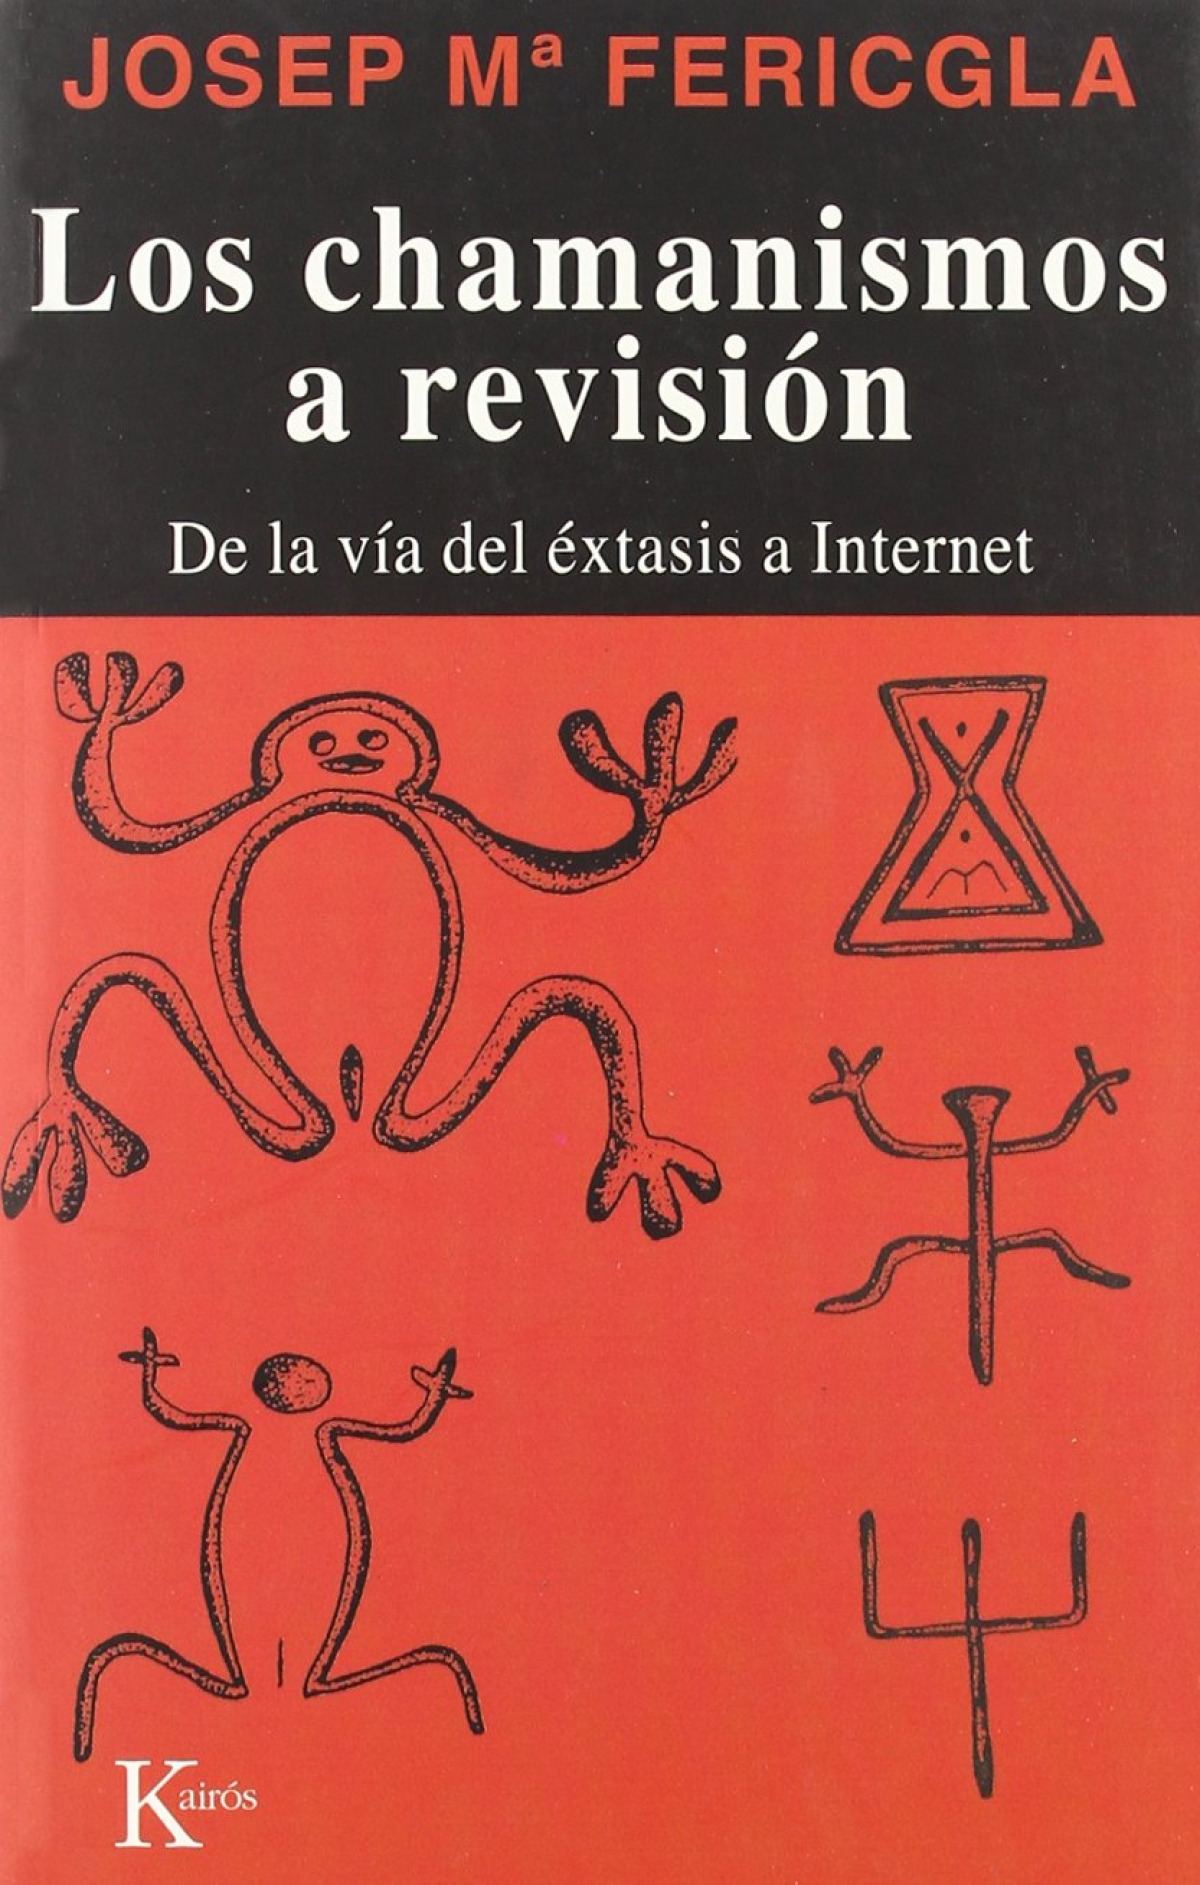 Los chamanismos a revisión DE LA VIA DEL EXTASIS A INTERNET - Fericgla, Josep Maria